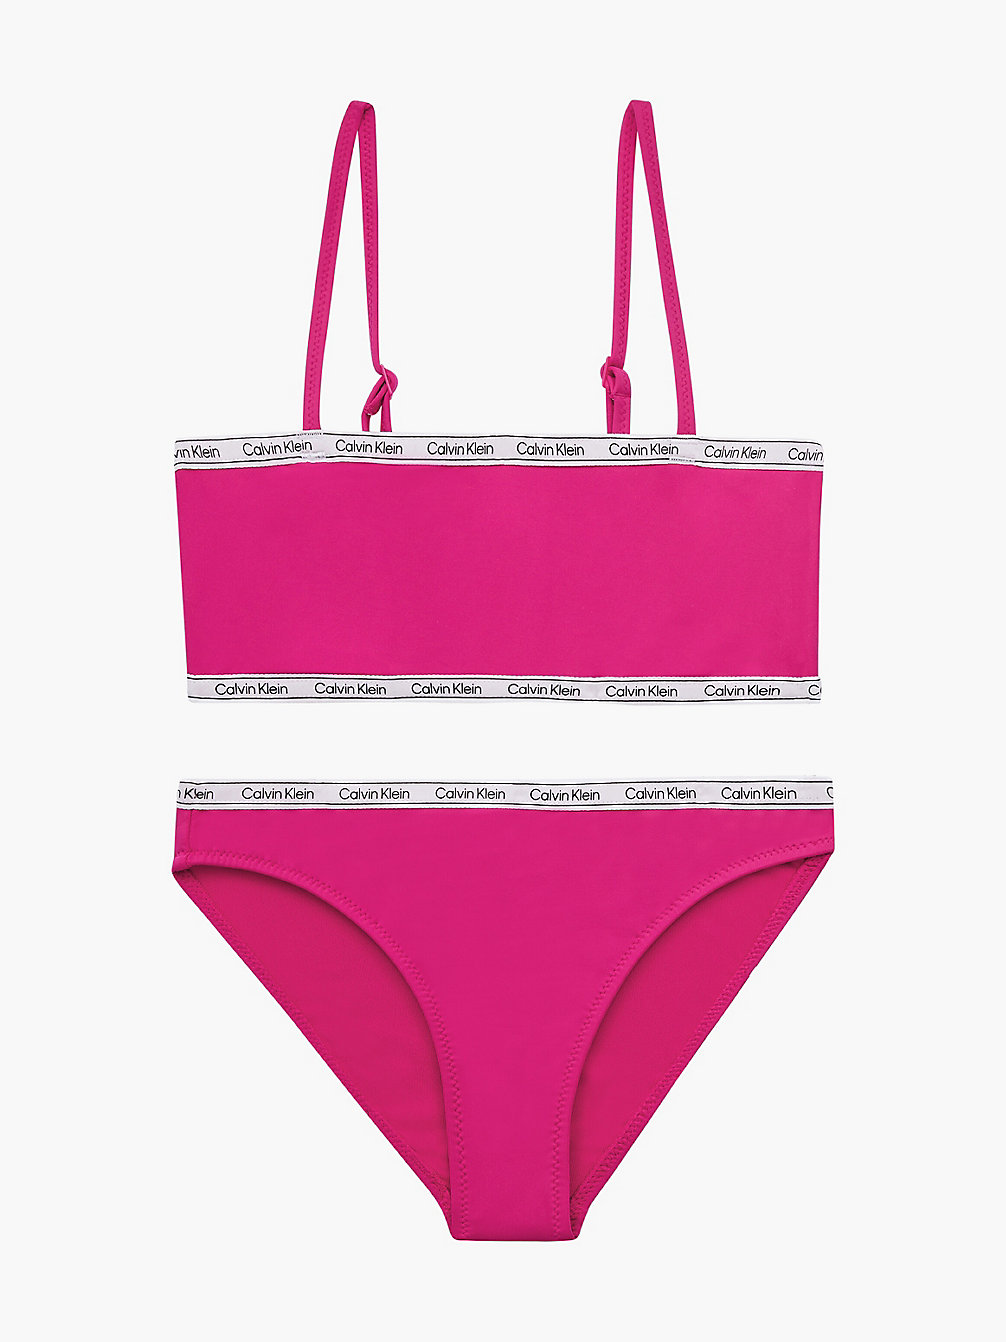 ROYAL PINK > Bikini-Set Mit Bralette Für Mädchen - Logo Tape > undefined Maedchen - Calvin Klein